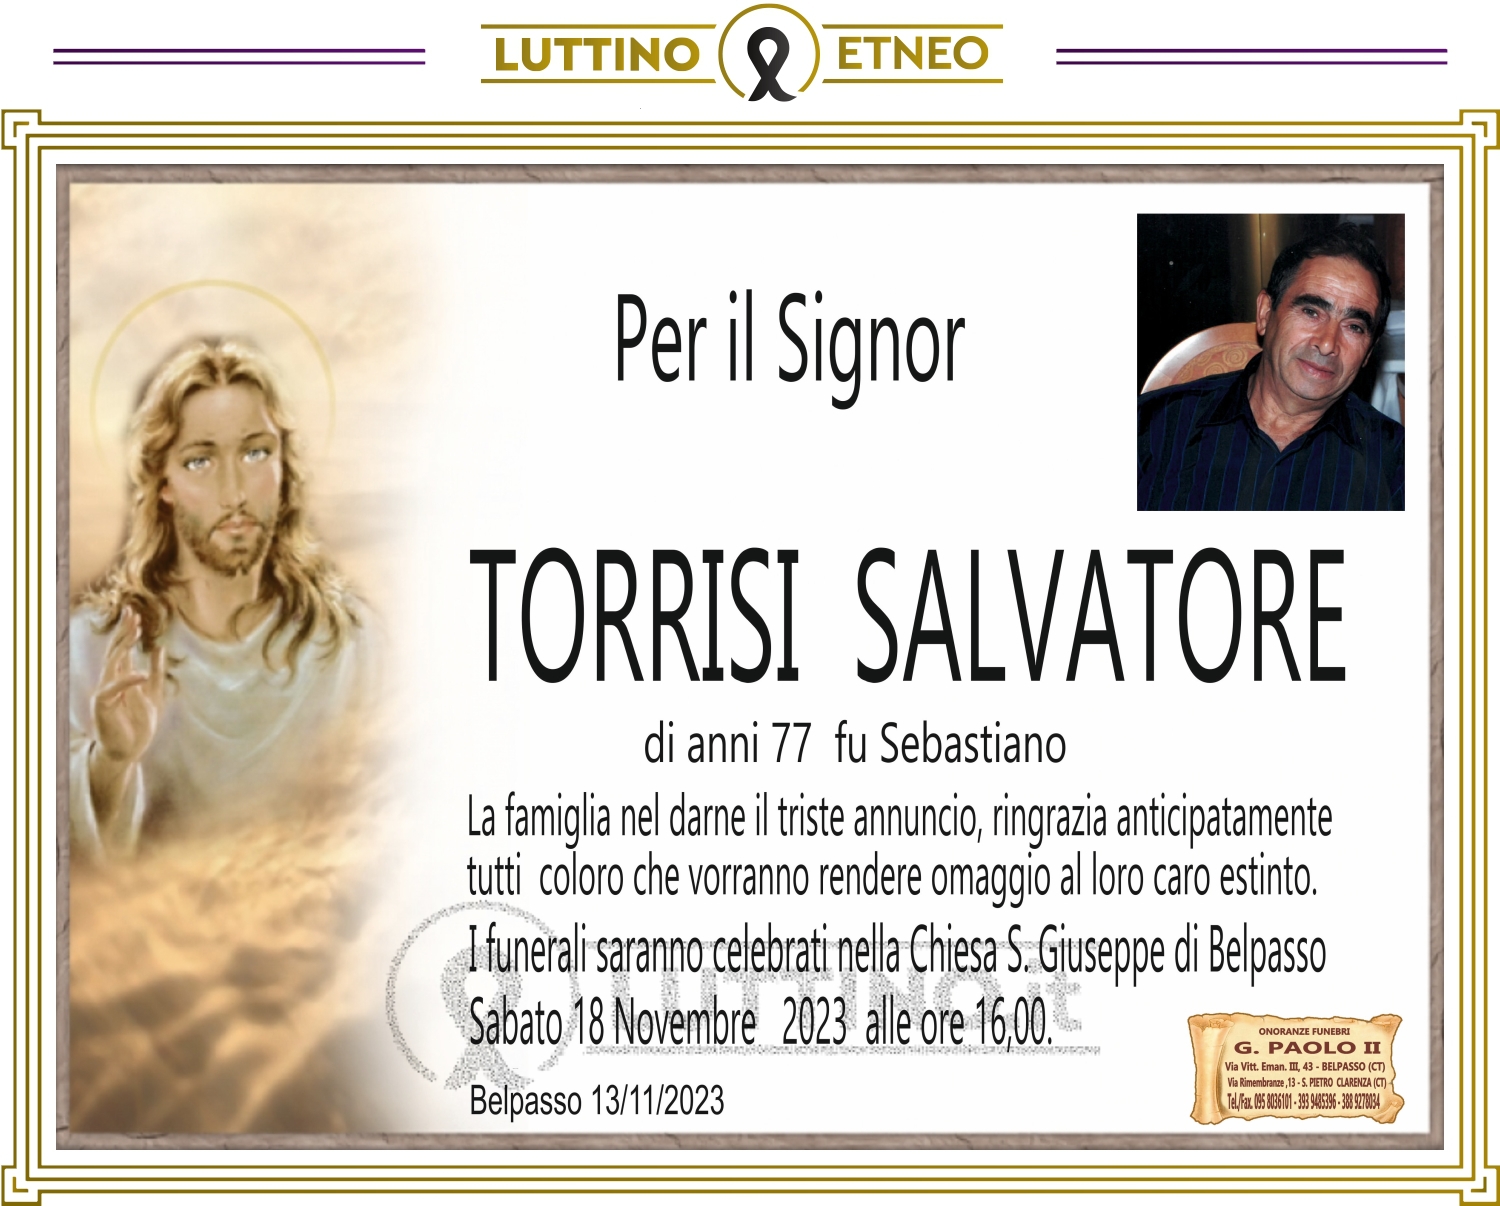 Salvatore Torrisi